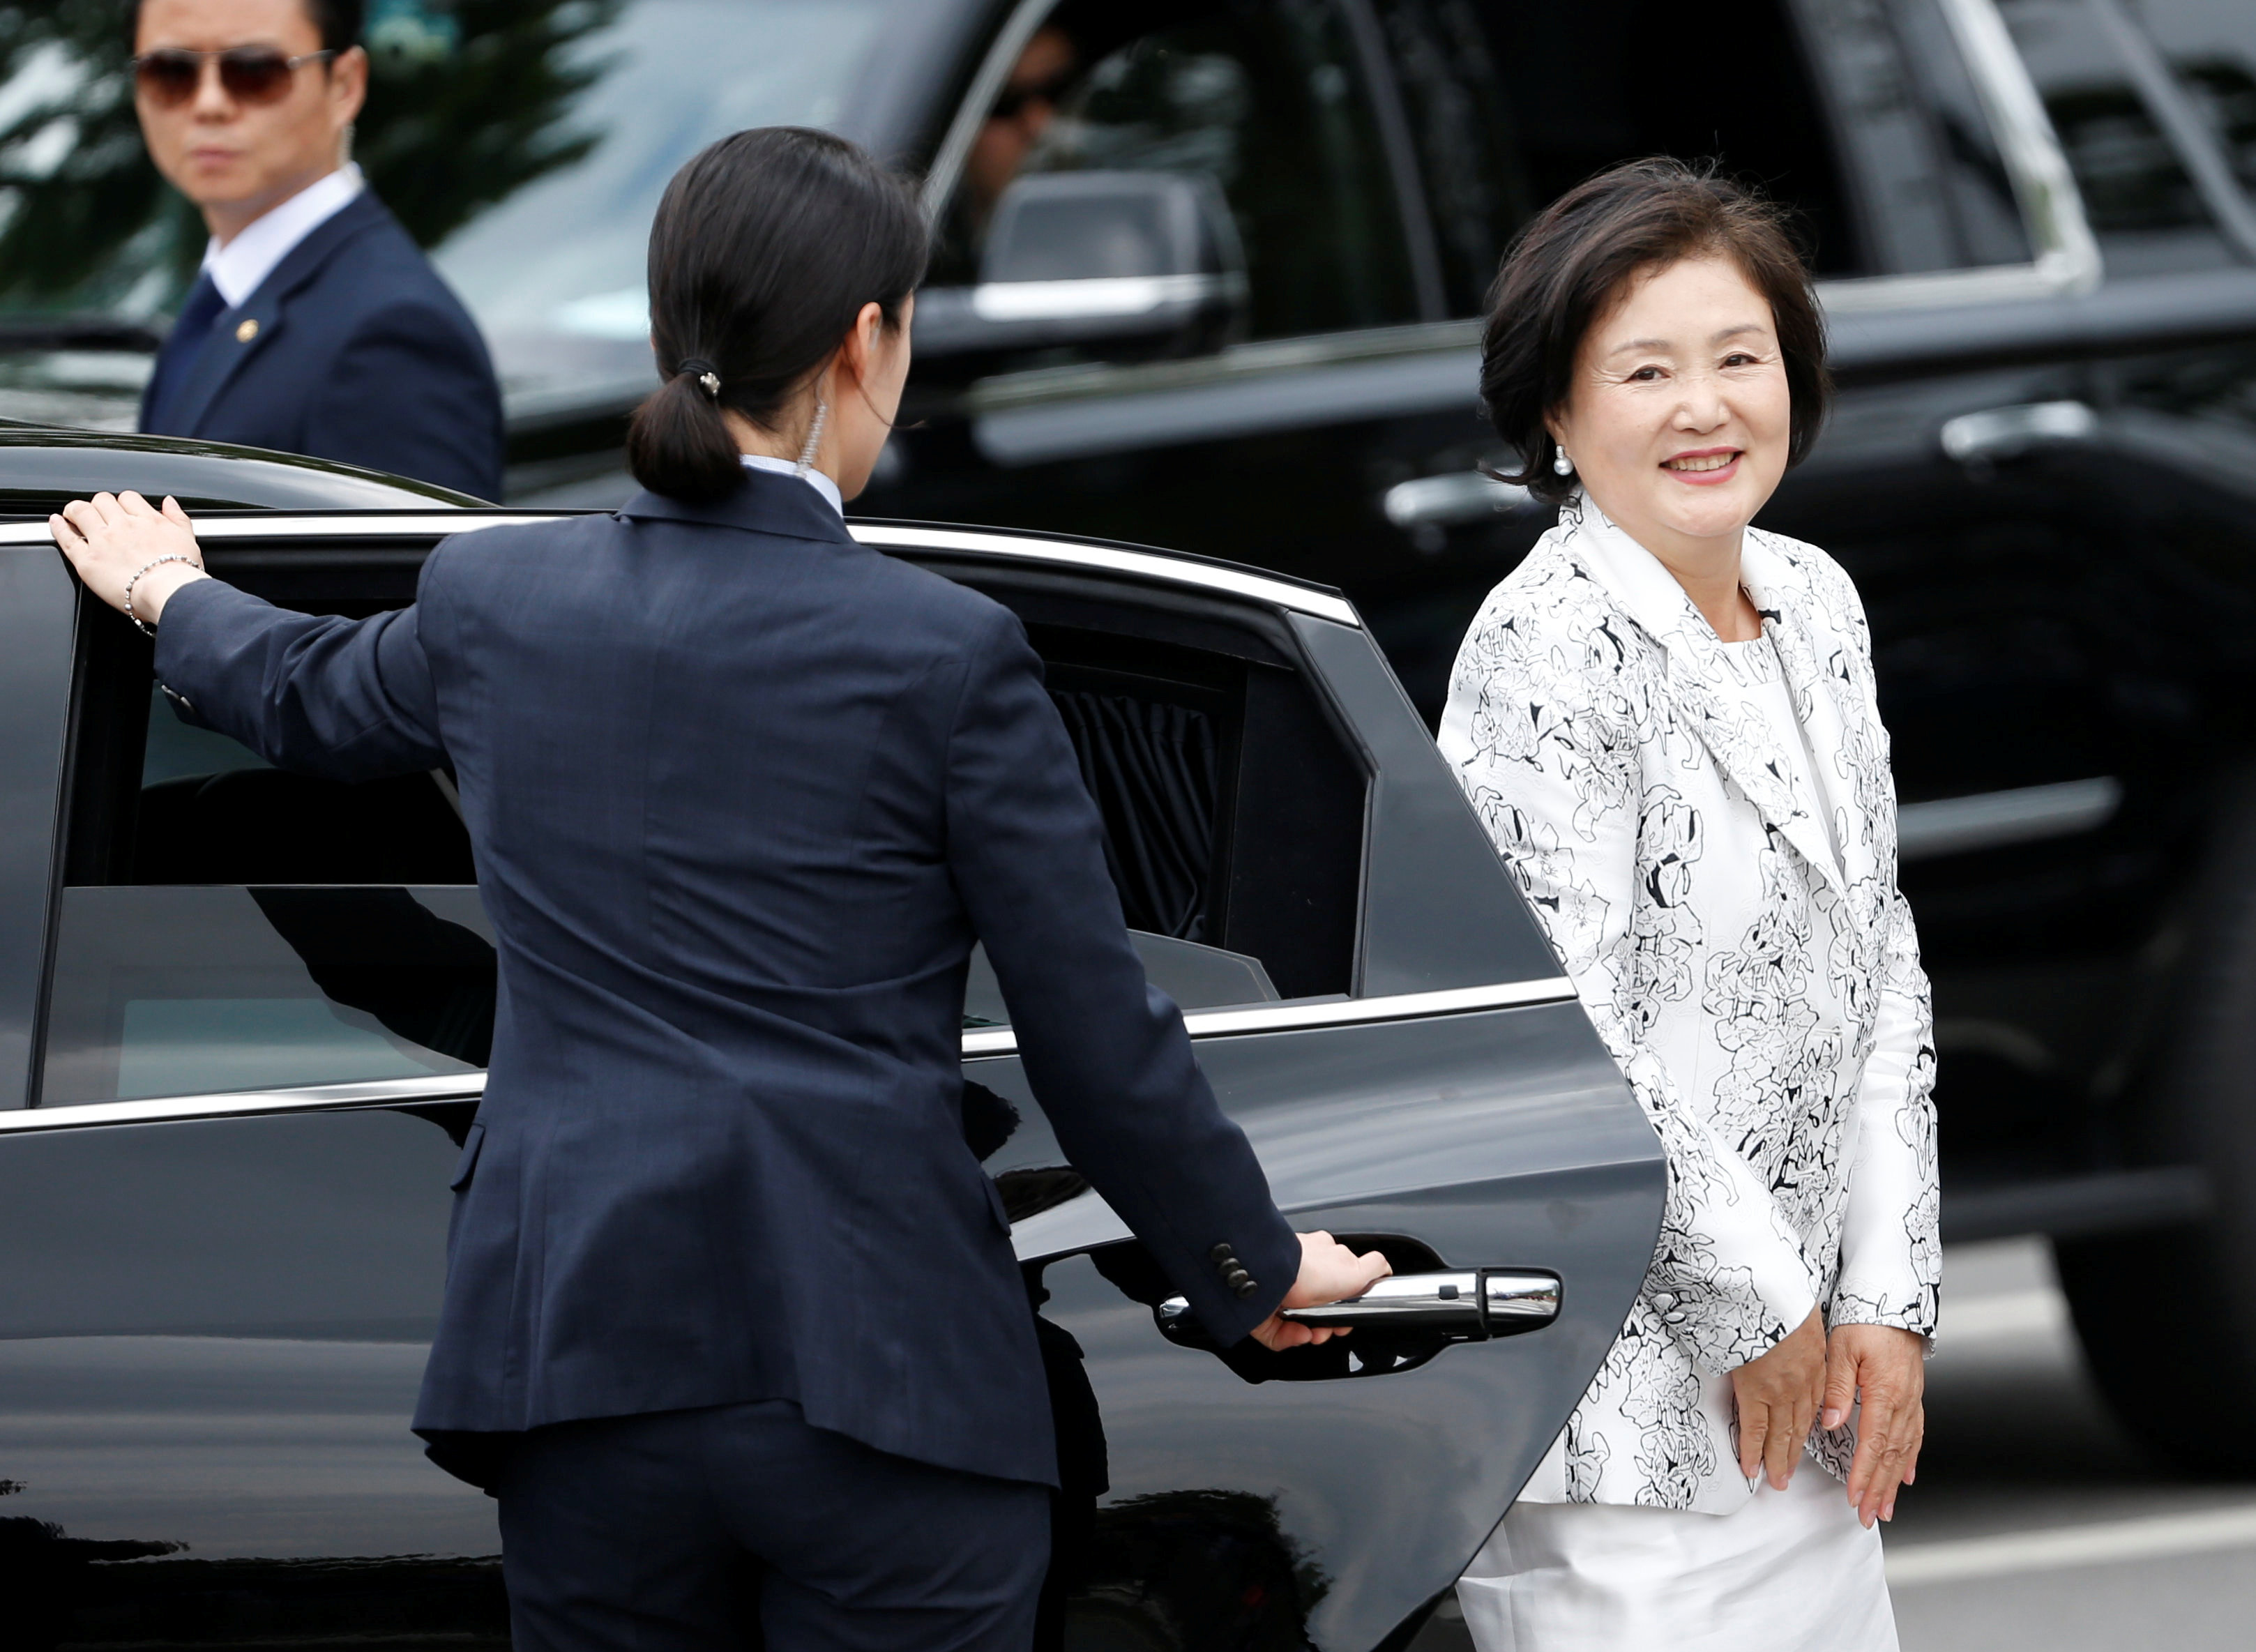 كيم جونج سوك زوجة رئيس كوريا الجنوبية الجديد